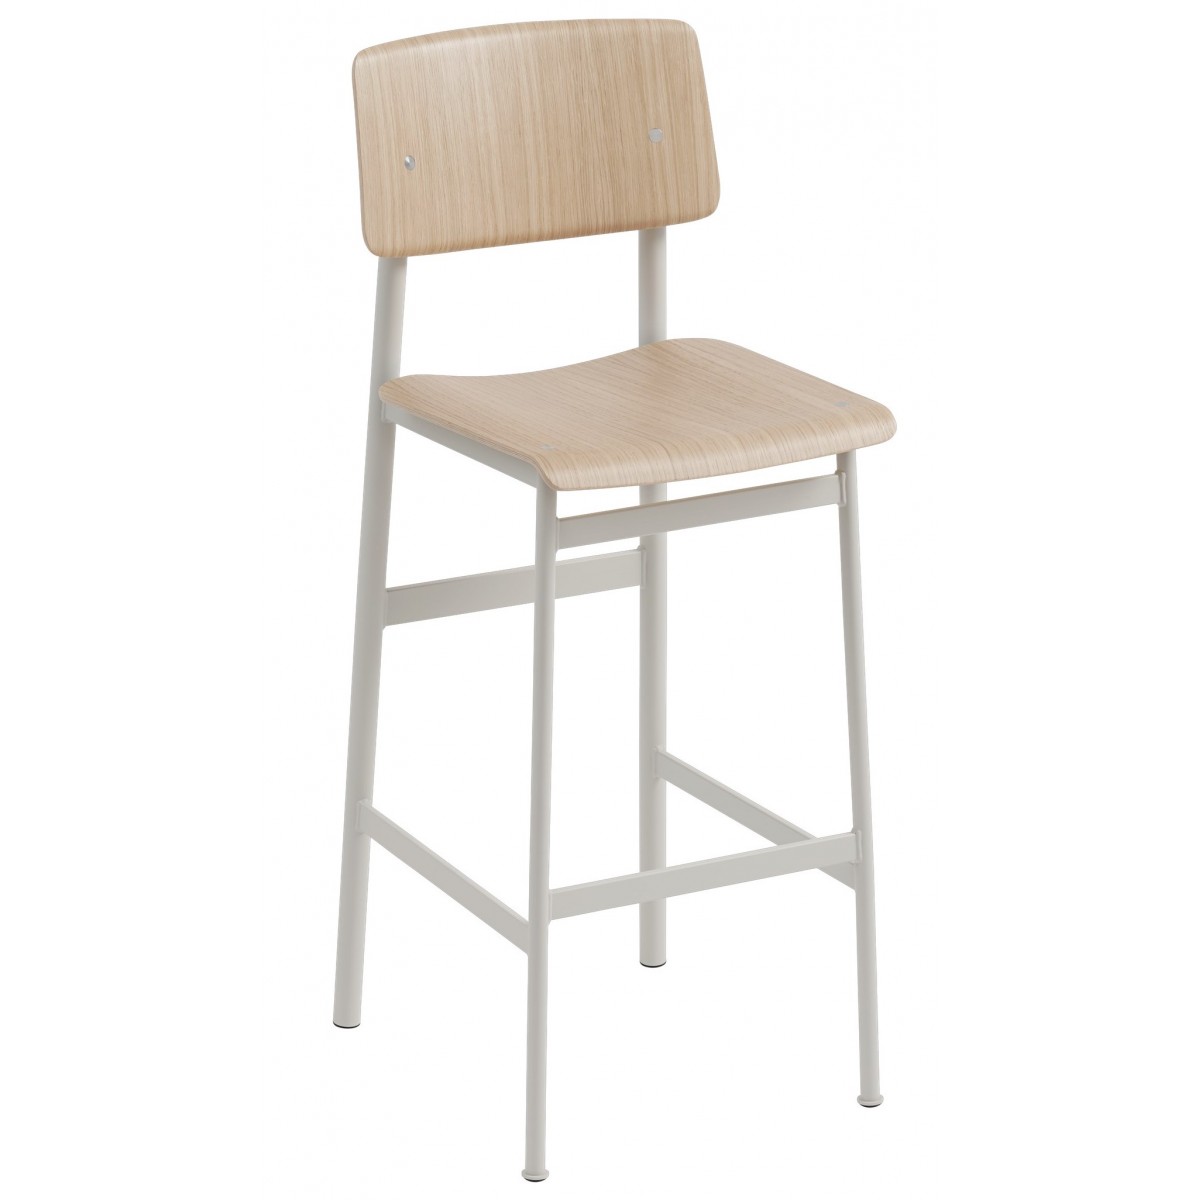 H75cm - grey/oak - Loft bar stool